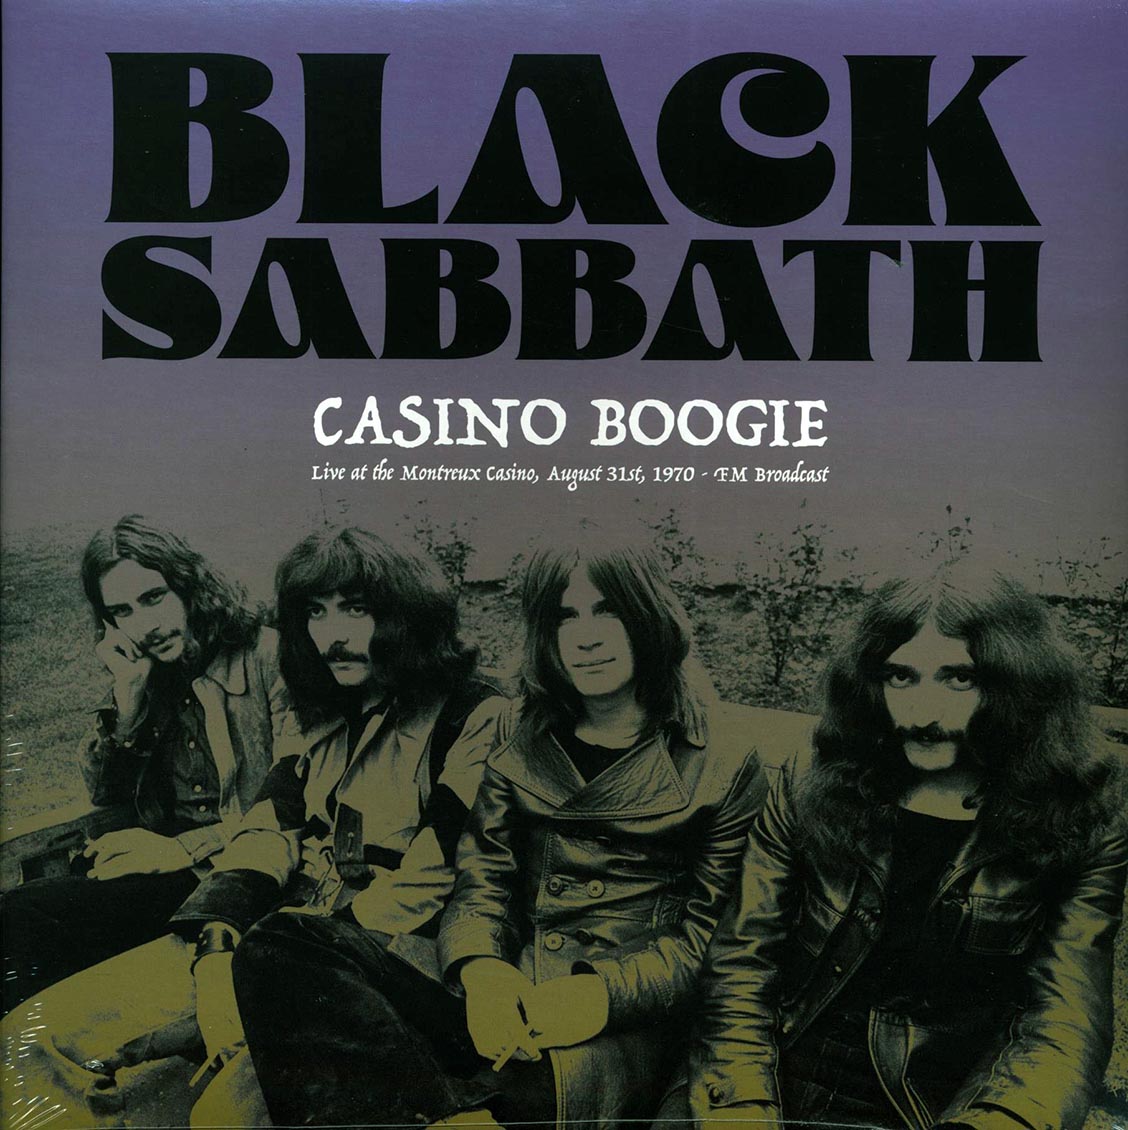 Black Sabbath - Casino Boogie: Live At The Montreux Casino, August 31st 1970 FM Broadcast - Vinyl LP